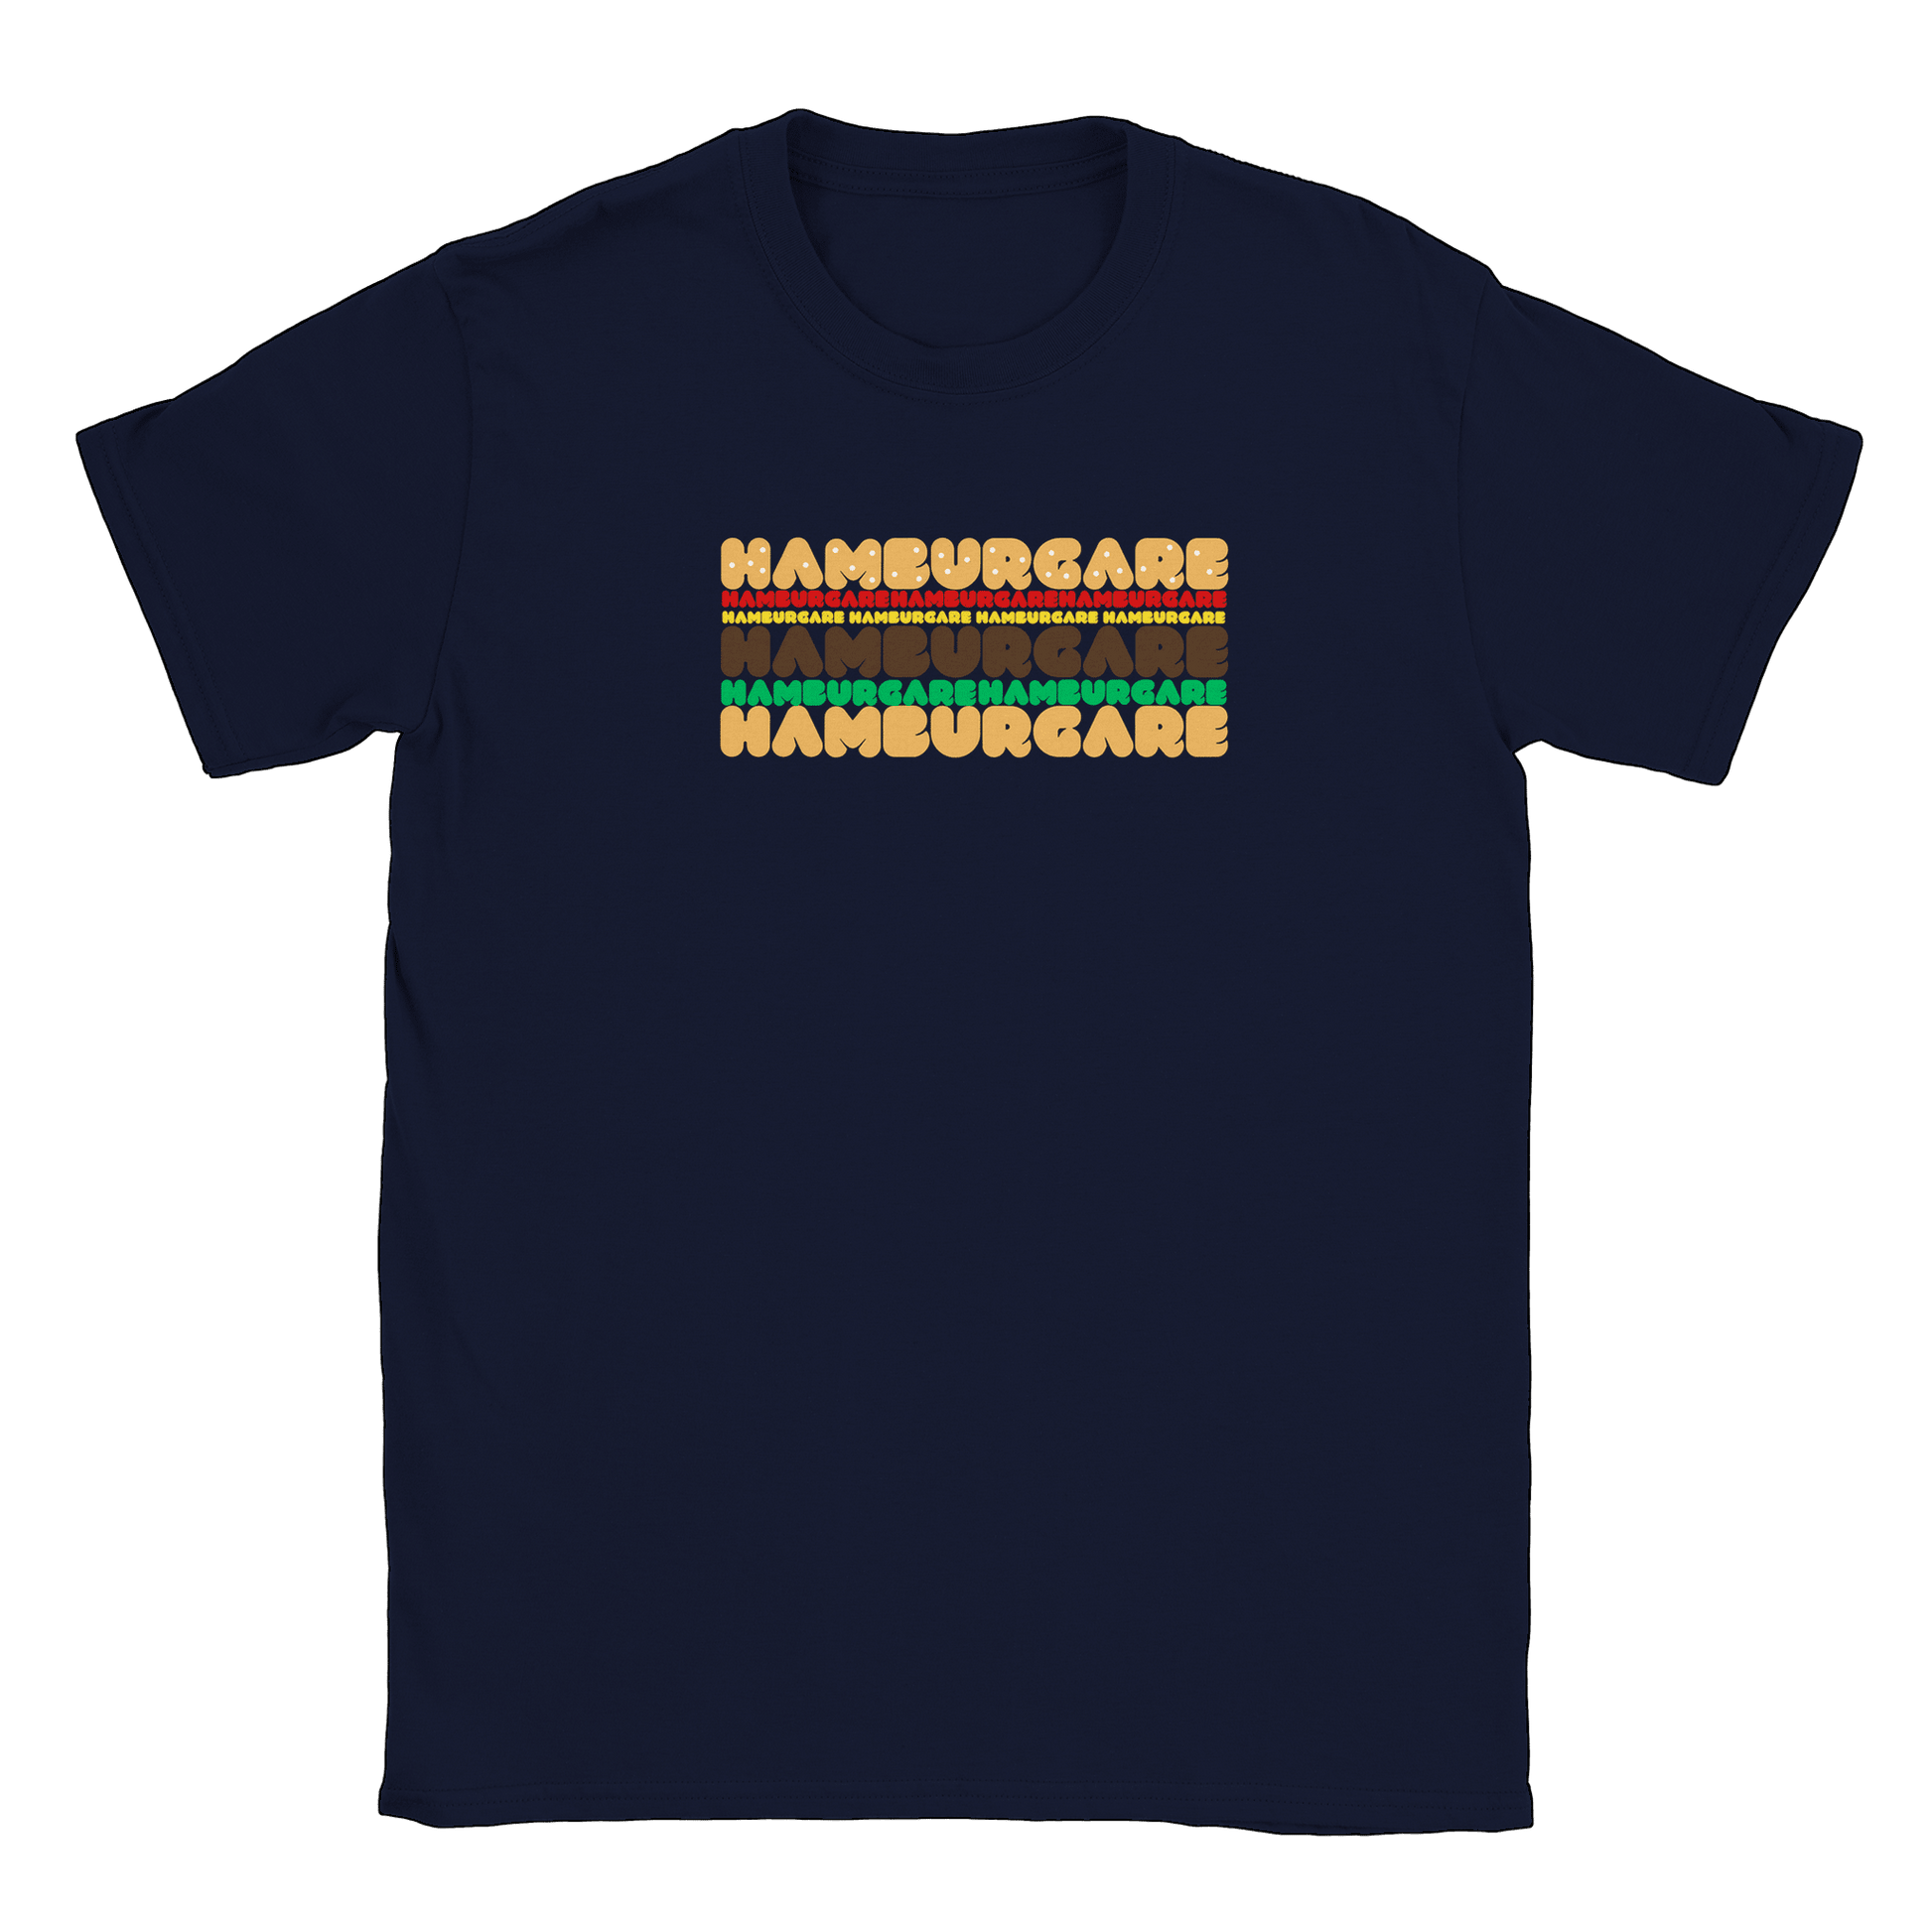 Hamburgare - T-shirt Navy